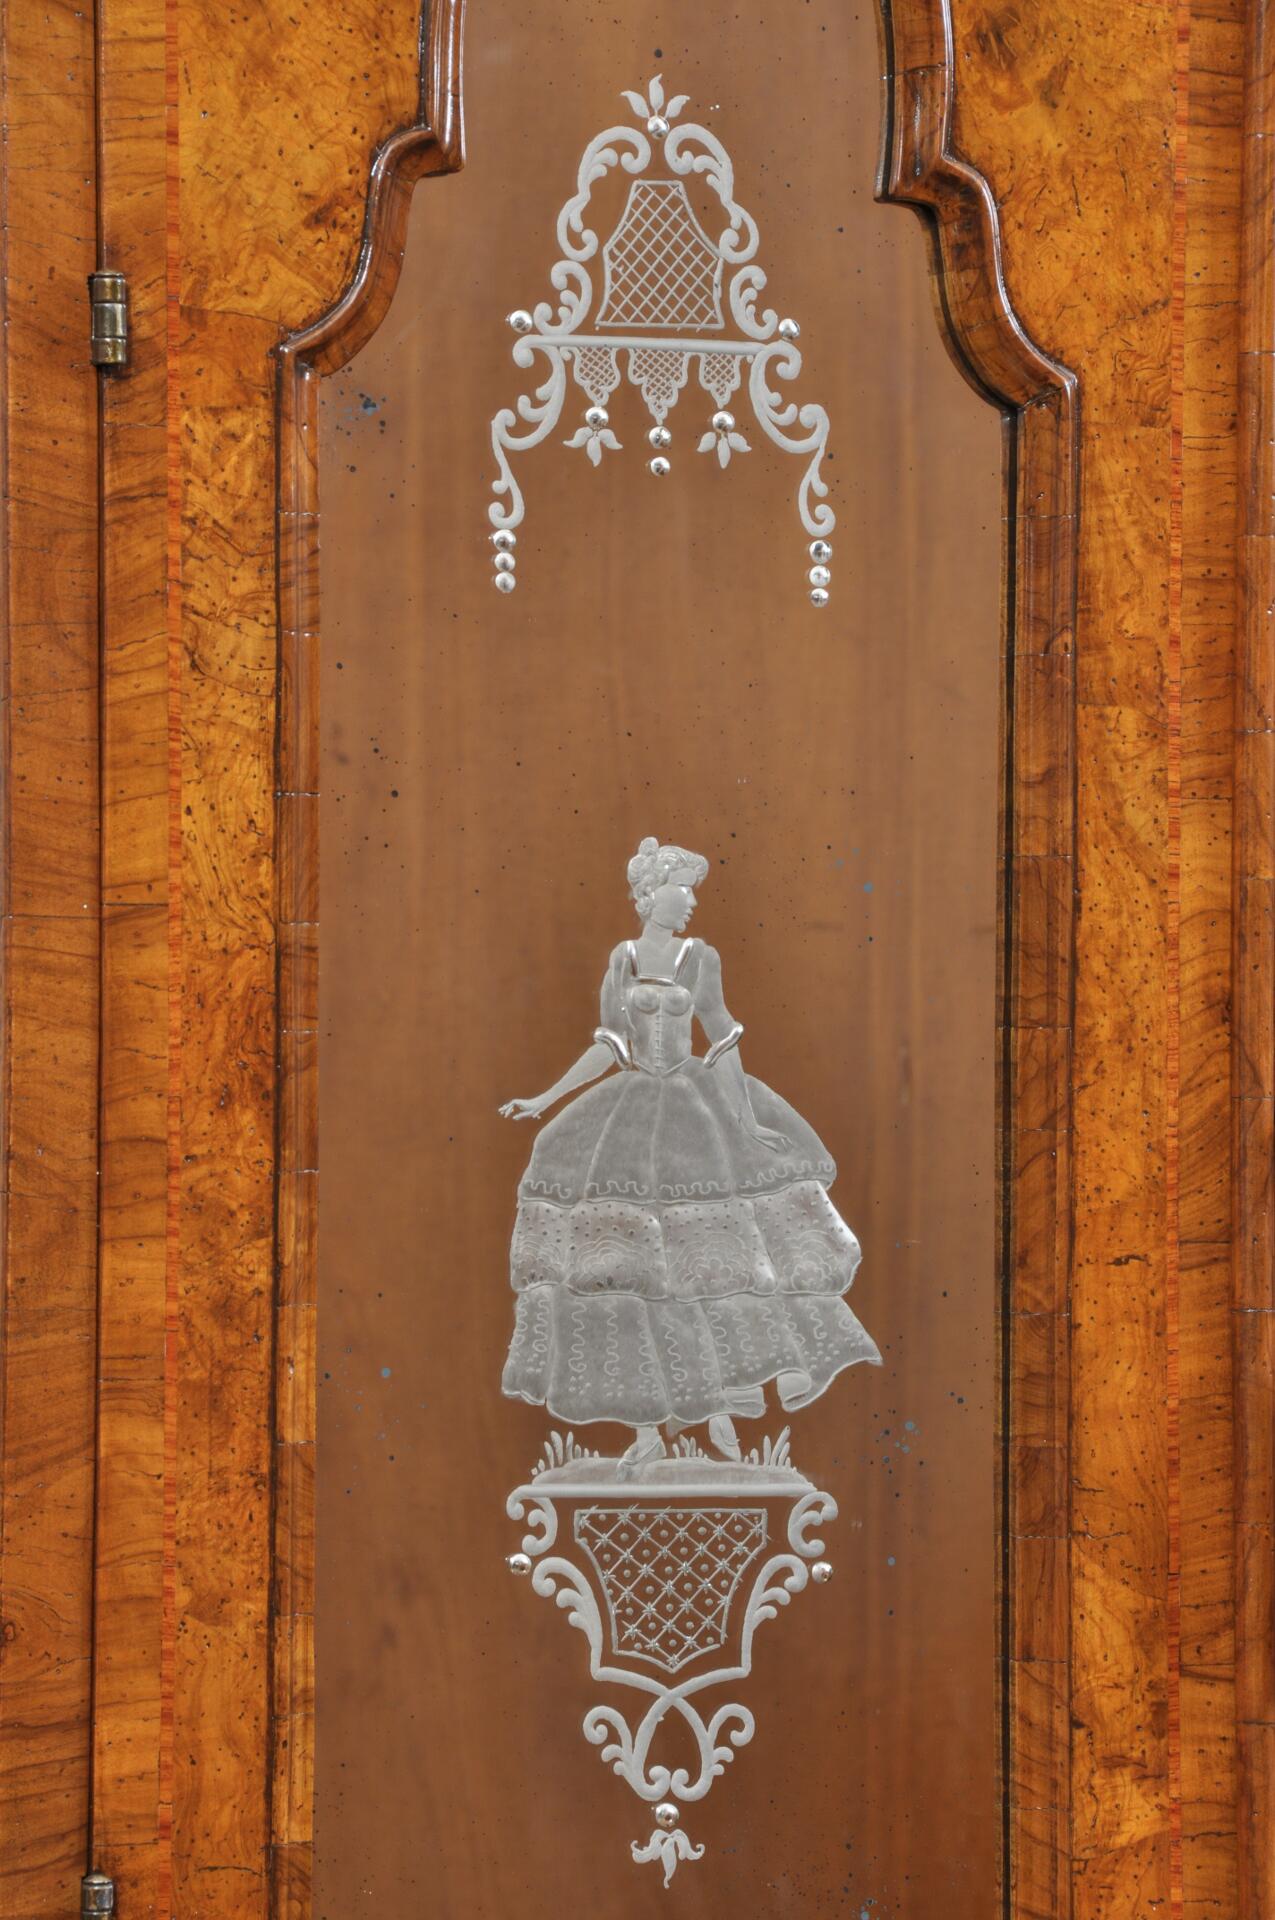 anta del trumeau sagomata in essenza di noce con specchio inciso a mano su lastra di argento con disegni di nobili del 700 barocco veneziano riproduzione artigianale e made in italy di lusso